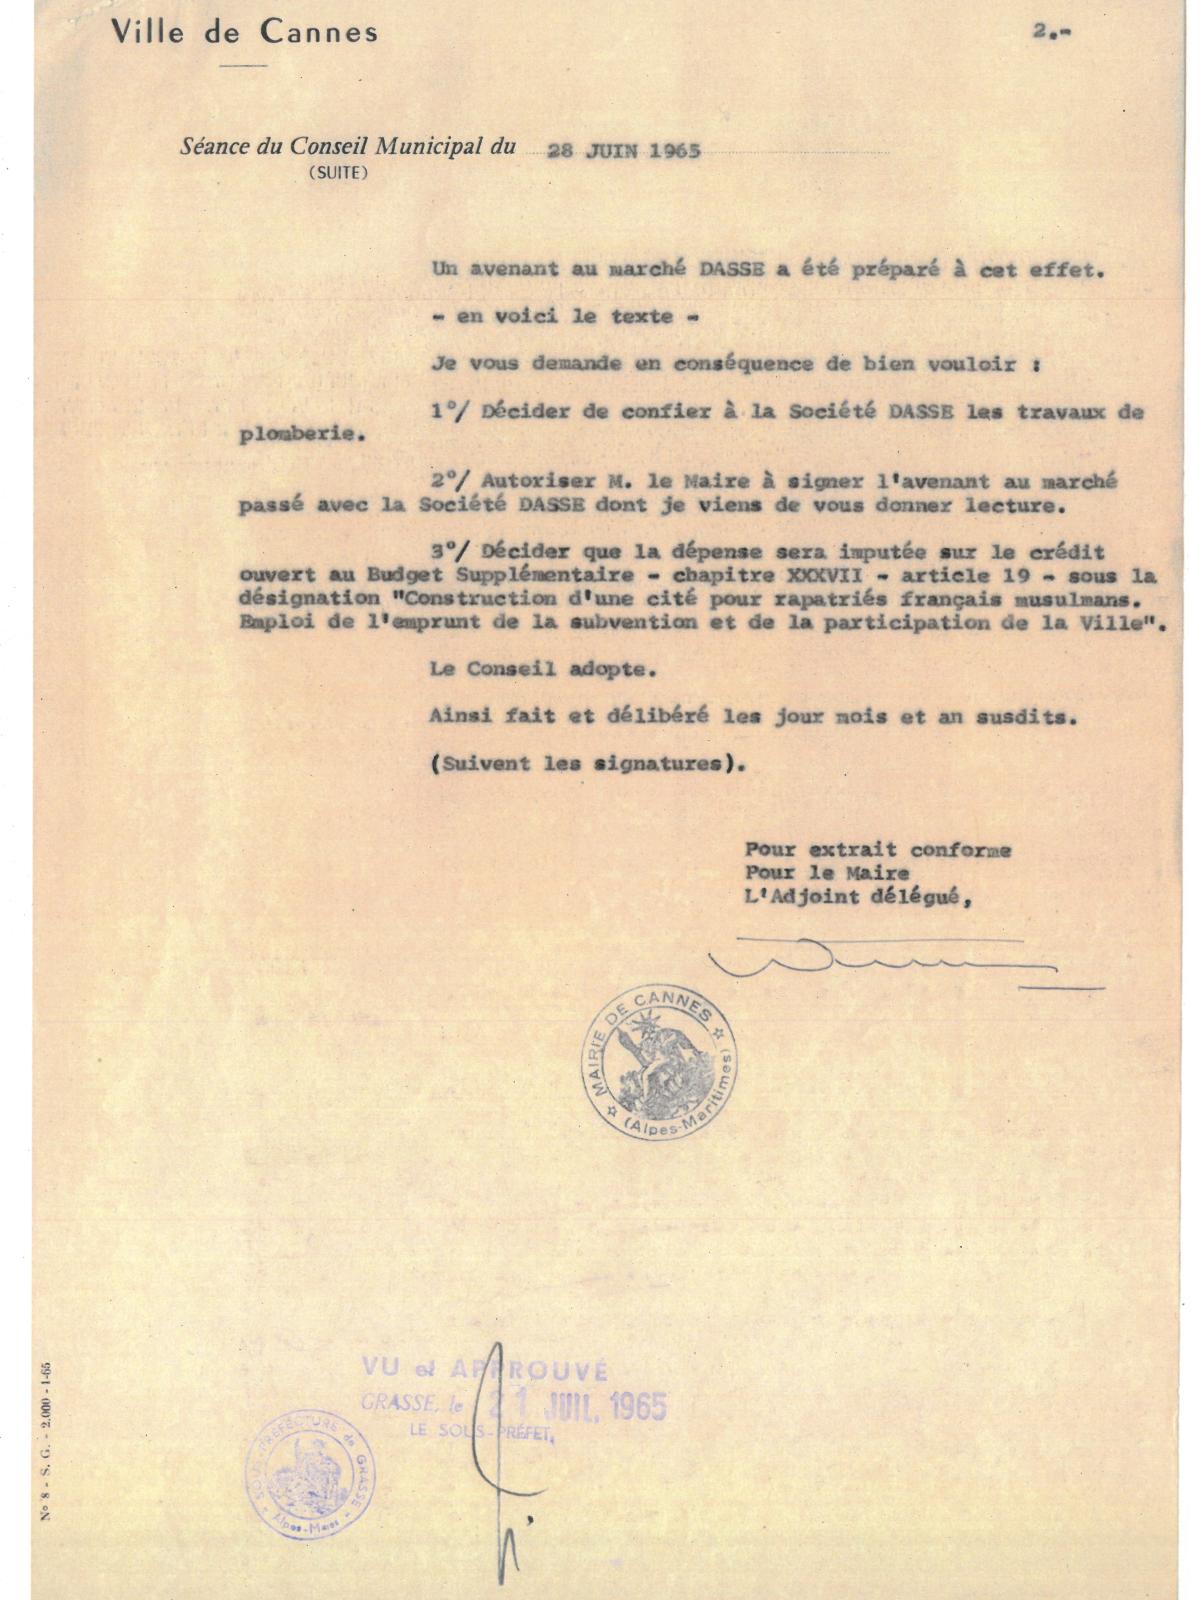 Illustration 16, p. 2 : accueil des Harkis à Cannes, délibérations du conseil municipal, séance extraordinaire du 28 juin 1965 (Archives de Cannes, 22W238)